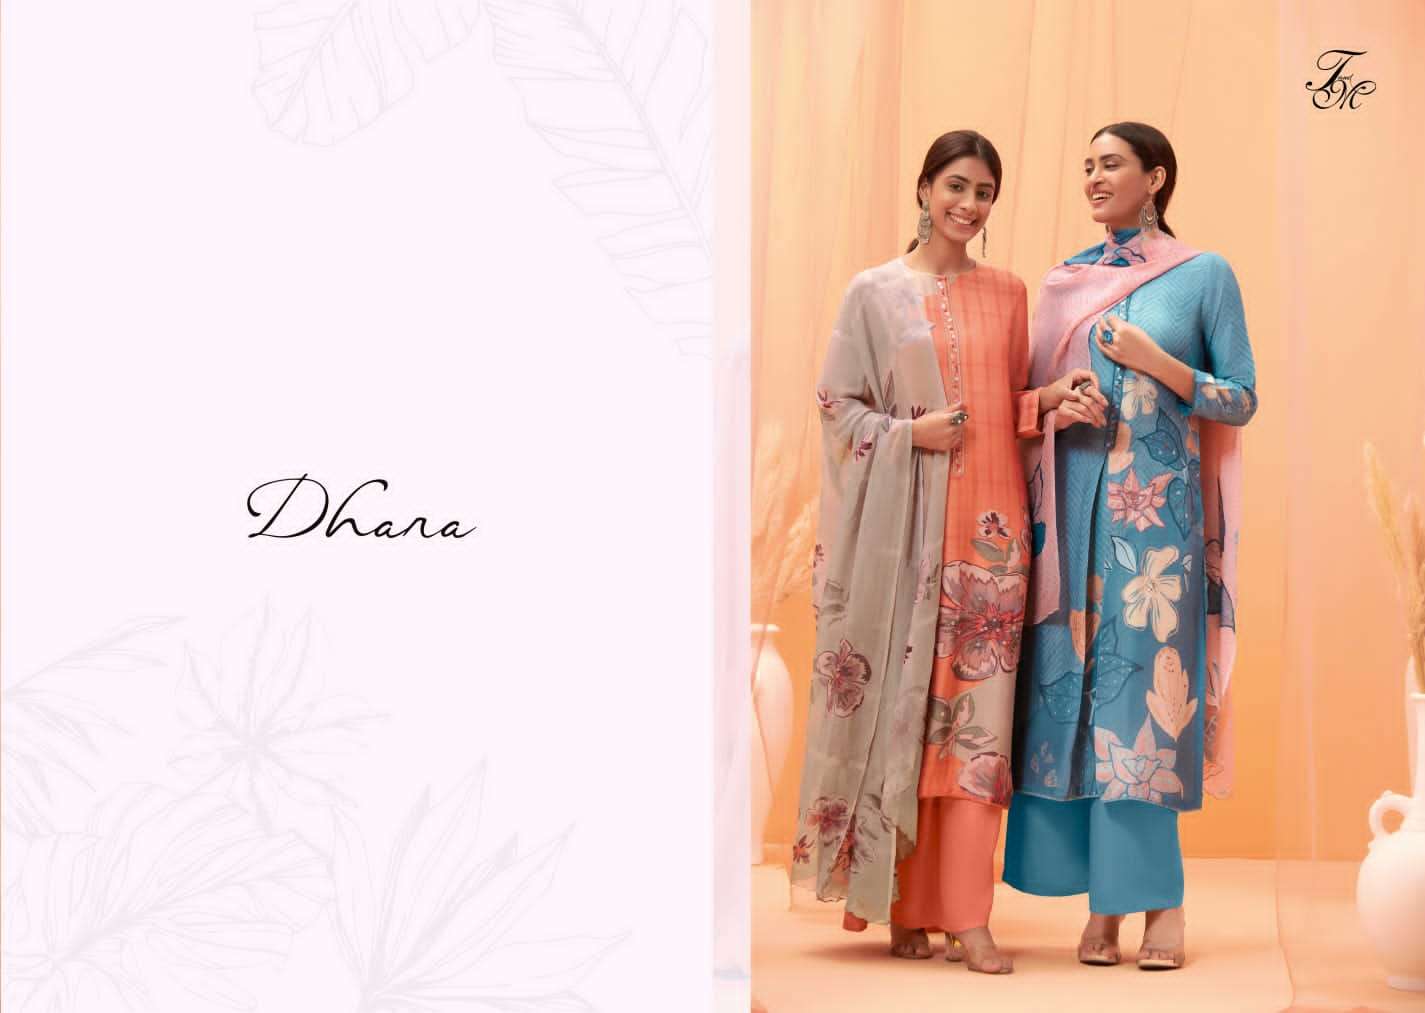 t&m dhara designer wedding wear pakistani salwar kameez wholesaler surat gujarat